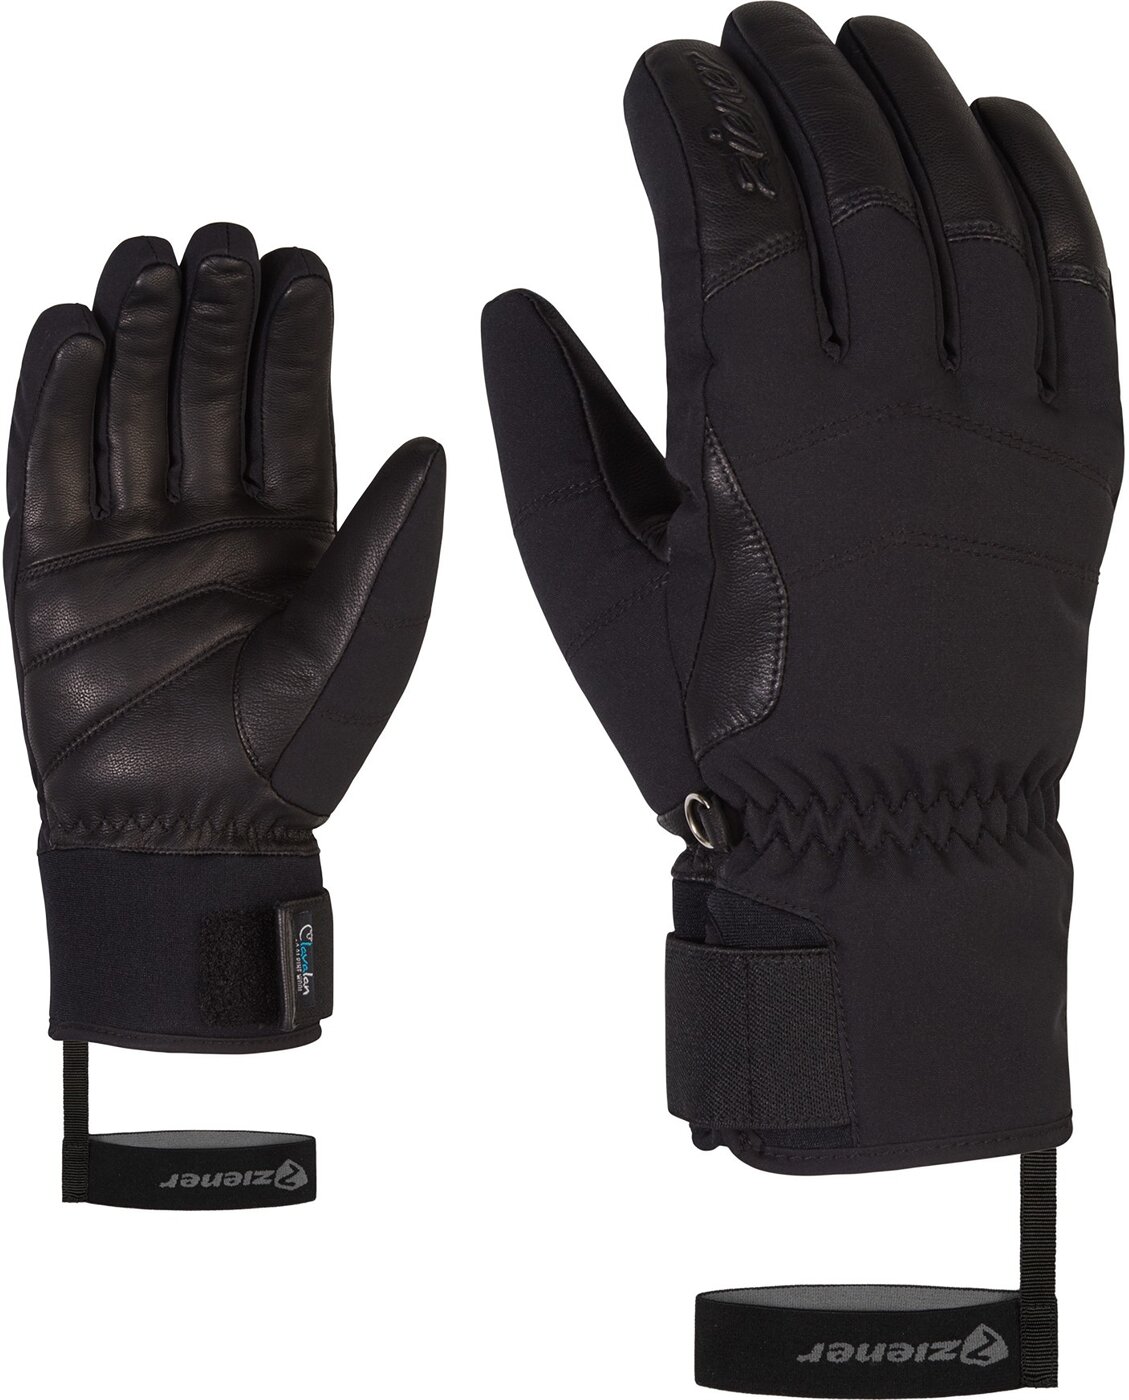 Ziener KALE AS(R) AW lady glove online kaufen | Handschuhe